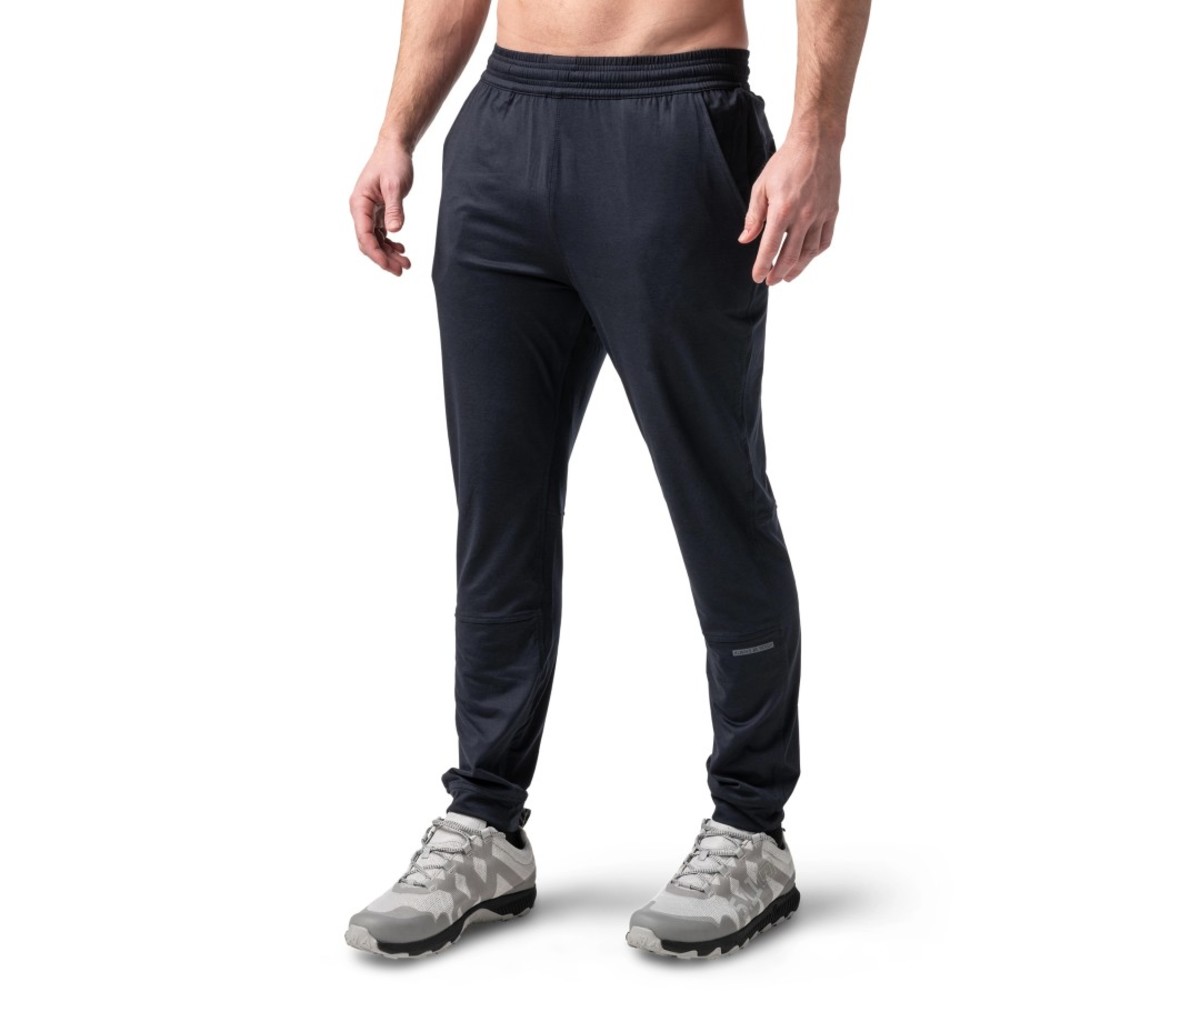 Shirtless man wearing jogger pants